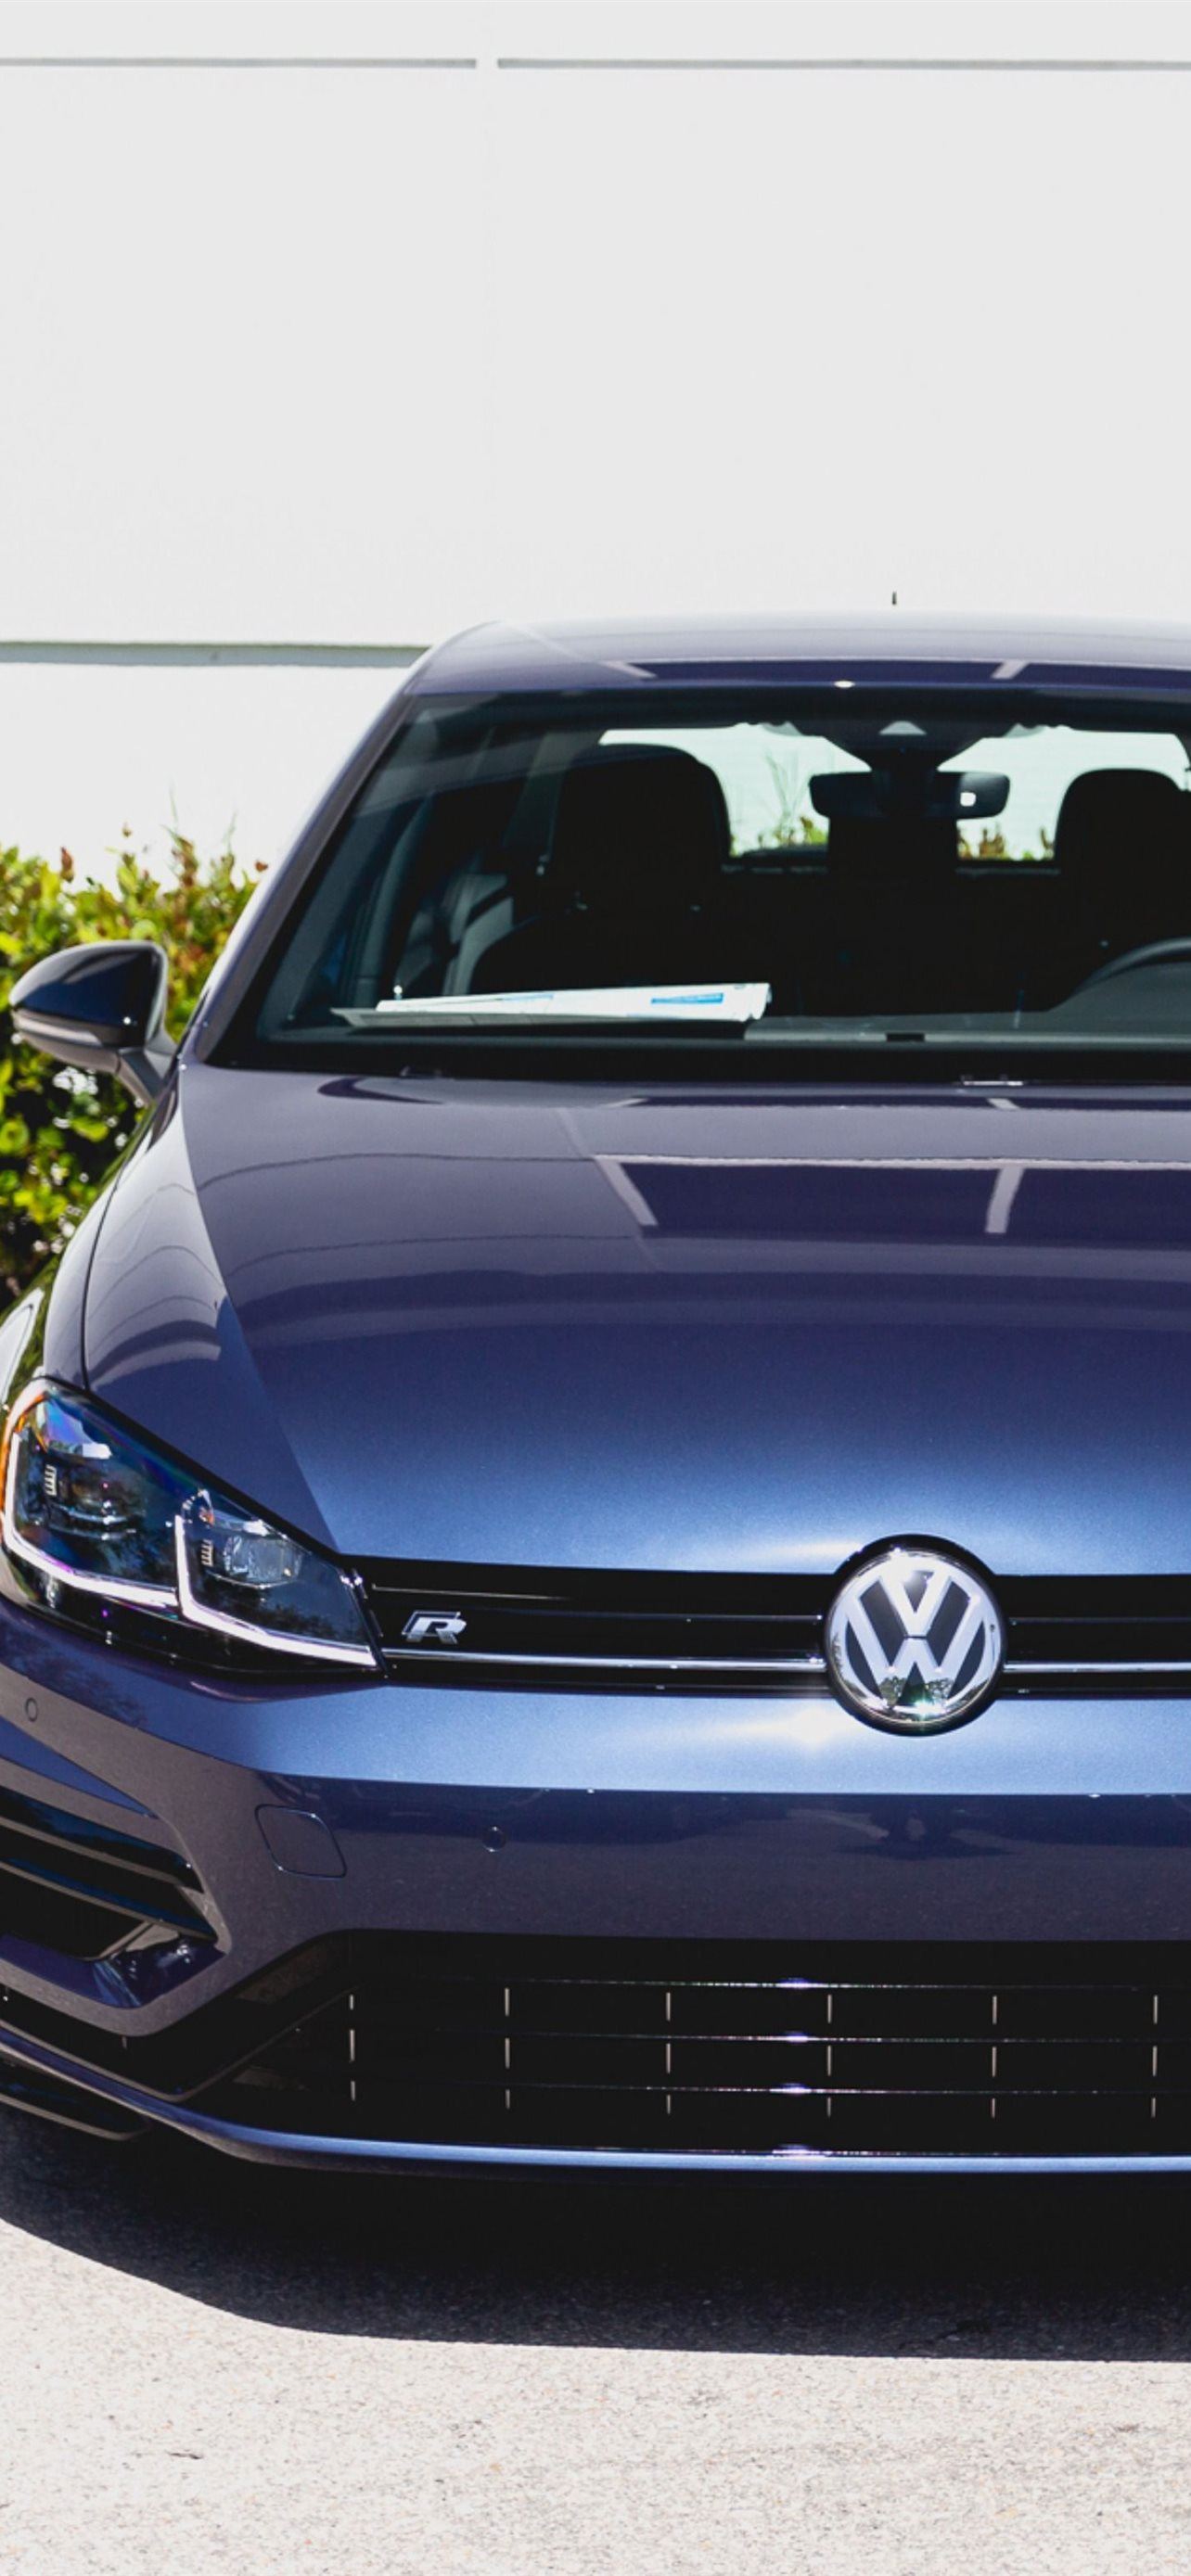 Volkswagen Golf R Wallpapers